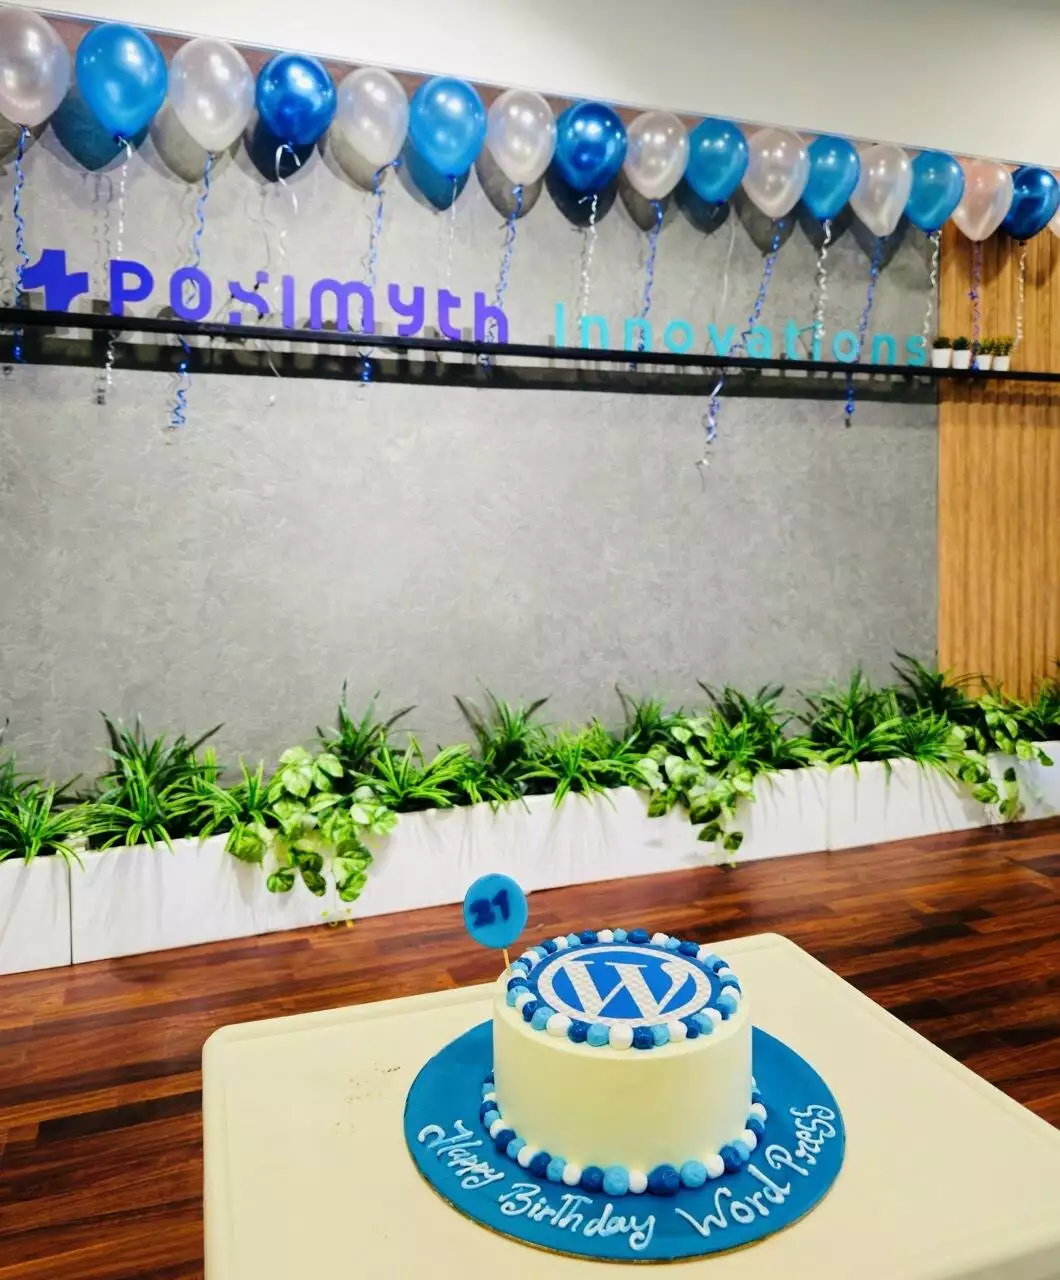 WordPress Birthday Cake 21st at POSIMYTH